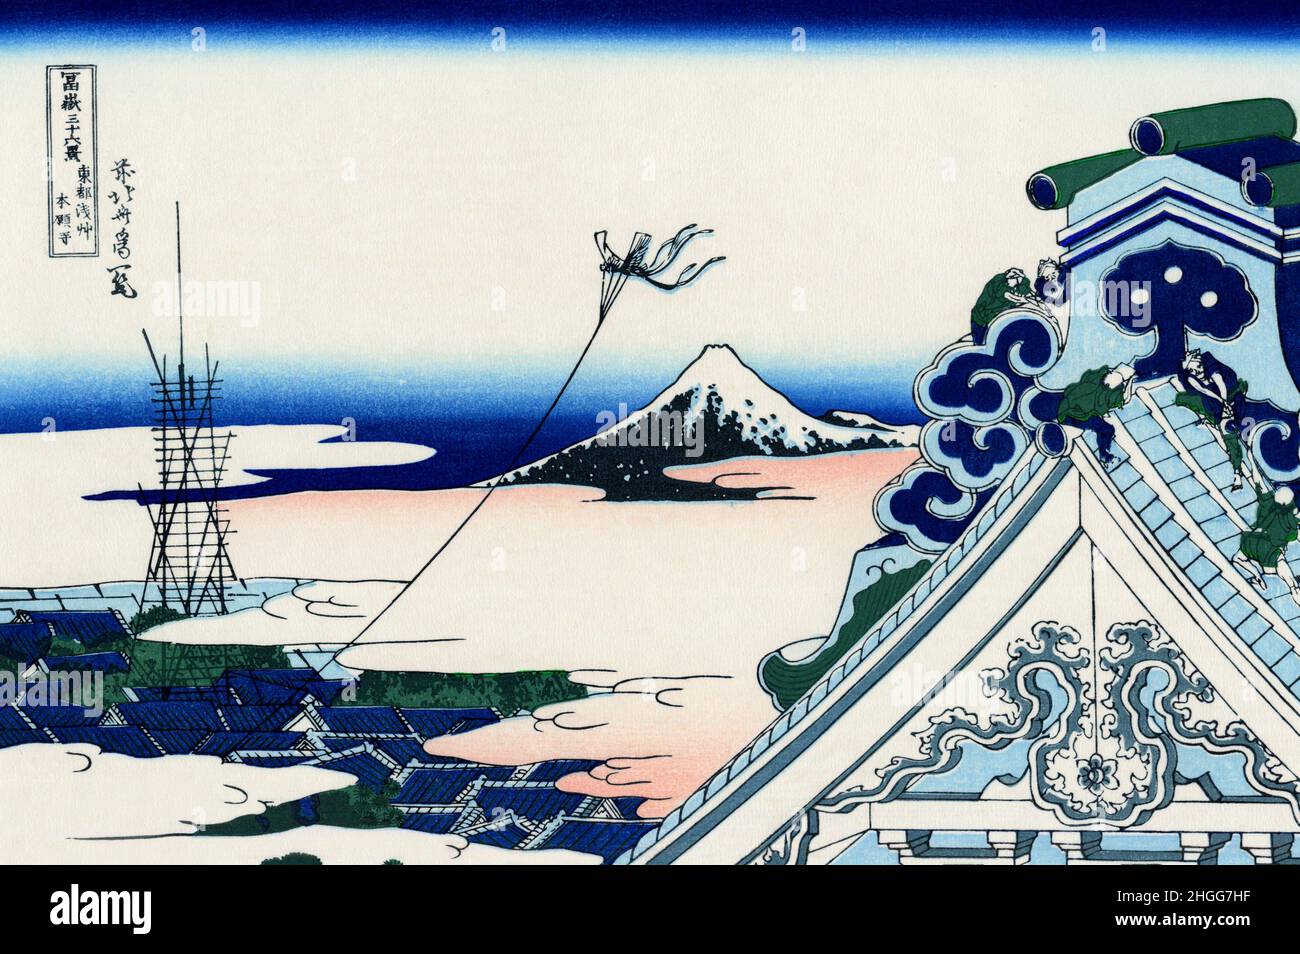 Japón: “Templo Asakusa Hongan-ji en la capital oriental”. Impresión en bloque de madera ukiyo-e de la serie «Treinta y seis vistas del monte Fuji» de Katsushika Hokusai (31 de octubre de 1760 - 10 de mayo de 1849), c. 1830. «36 Vistas del Monte Fuji» es una serie «ukiyo-e» de grandes grabados en madera del artista Katsushika Hokusai. La serie muestra el Monte Fuji en diferentes estaciones y condiciones climáticas desde diversos lugares y distancias. En realidad consiste en 46 impresiones creadas entre 1826 y 1833. Los primeros 36 fueron incluidos en la publicación original y, debido a su popularidad, otros 10 fueron añadidos posteriormente. Foto de stock